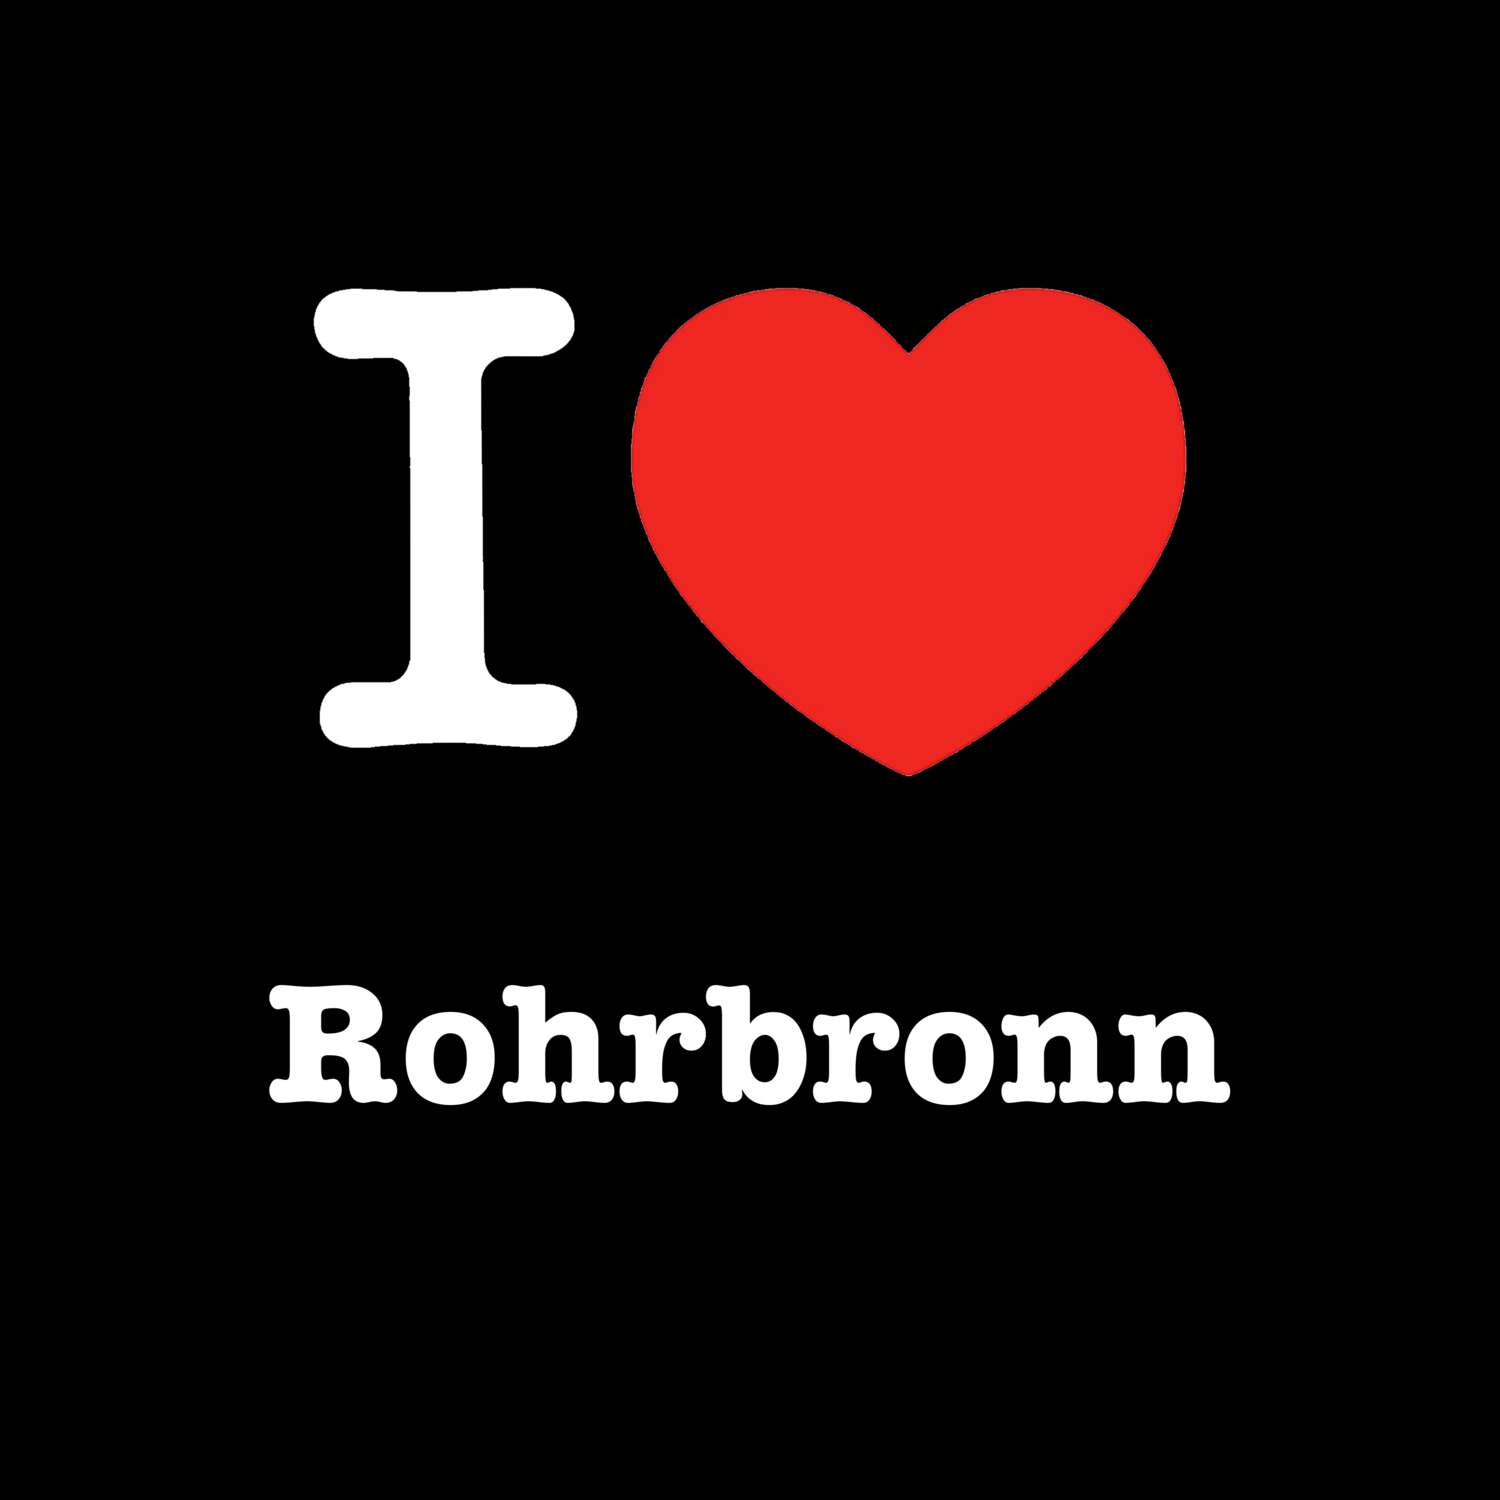 Rohrbronn T-Shirt »I love«